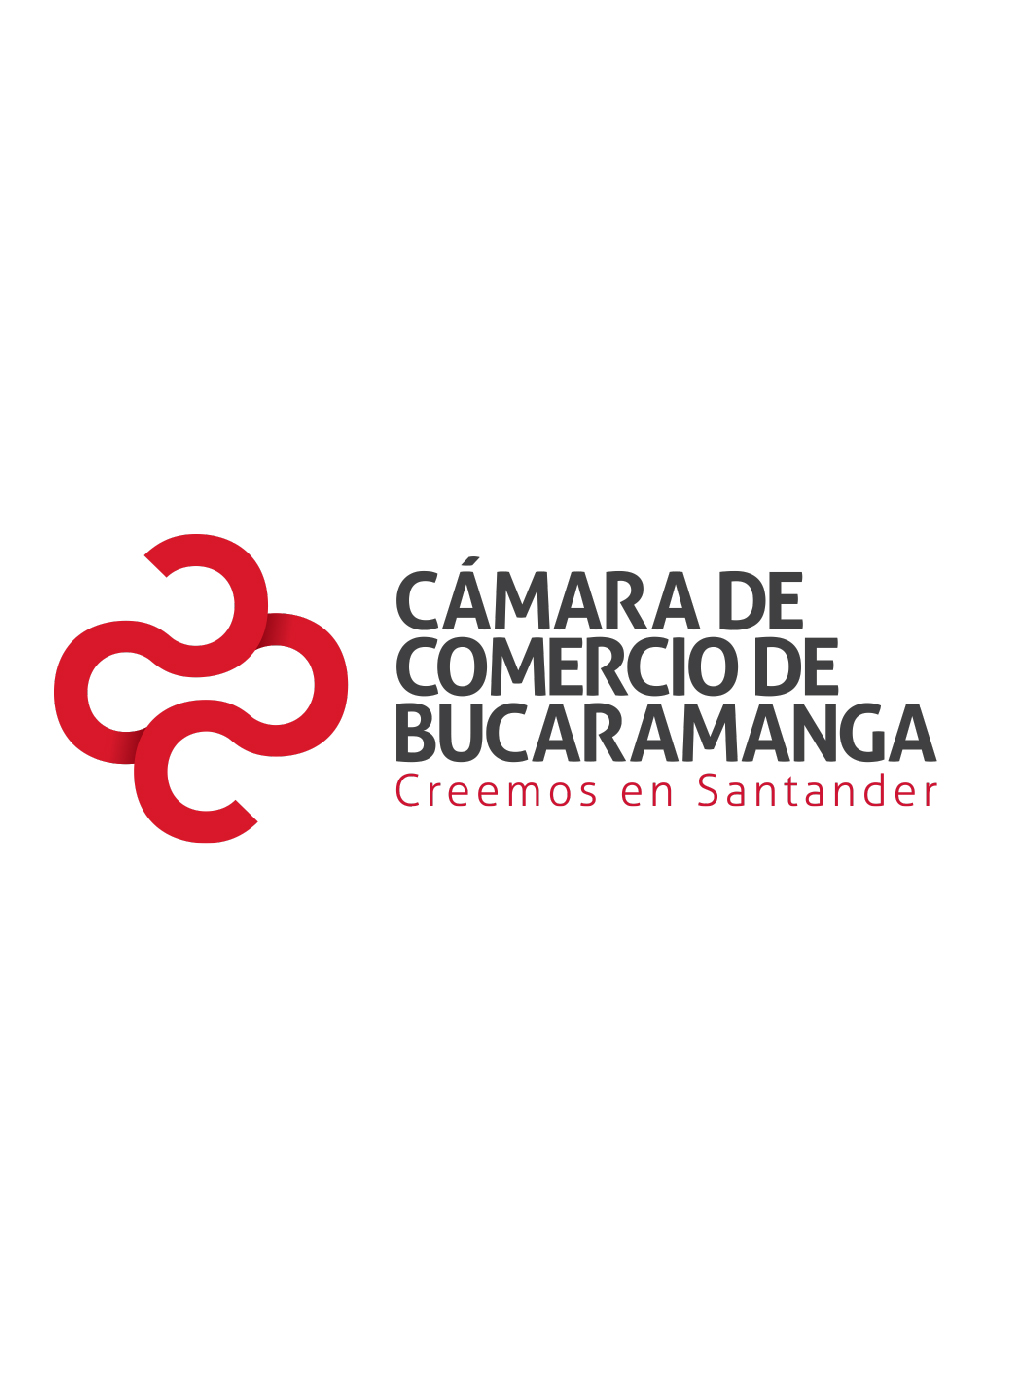 Perfil de las empresas exportadoras de Santander 2011